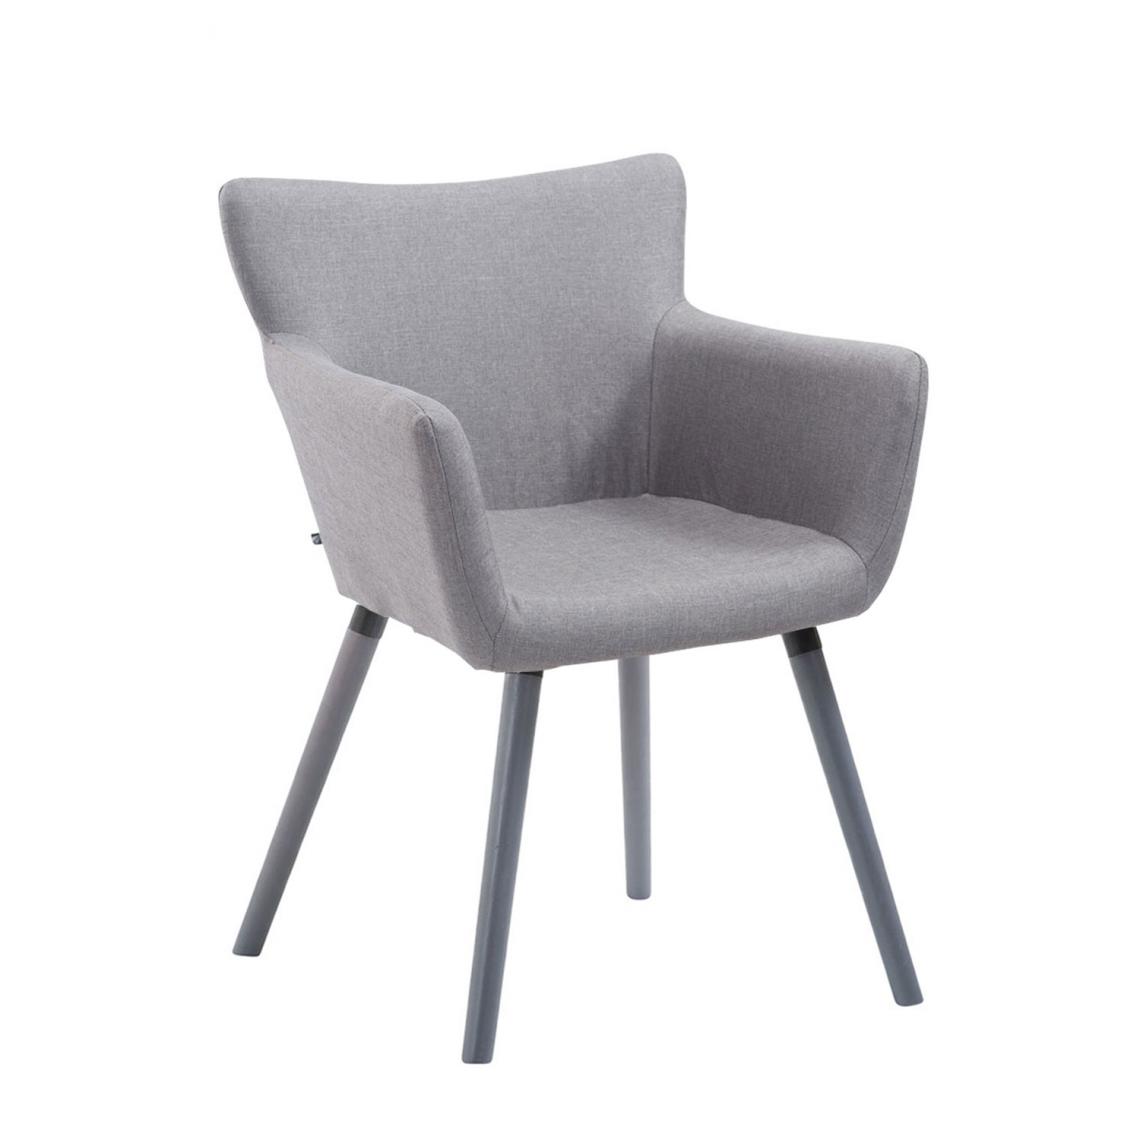 Icaverne - Admirable Chaise visiteur tissu famille Mascate gris couleur gris - Chaises